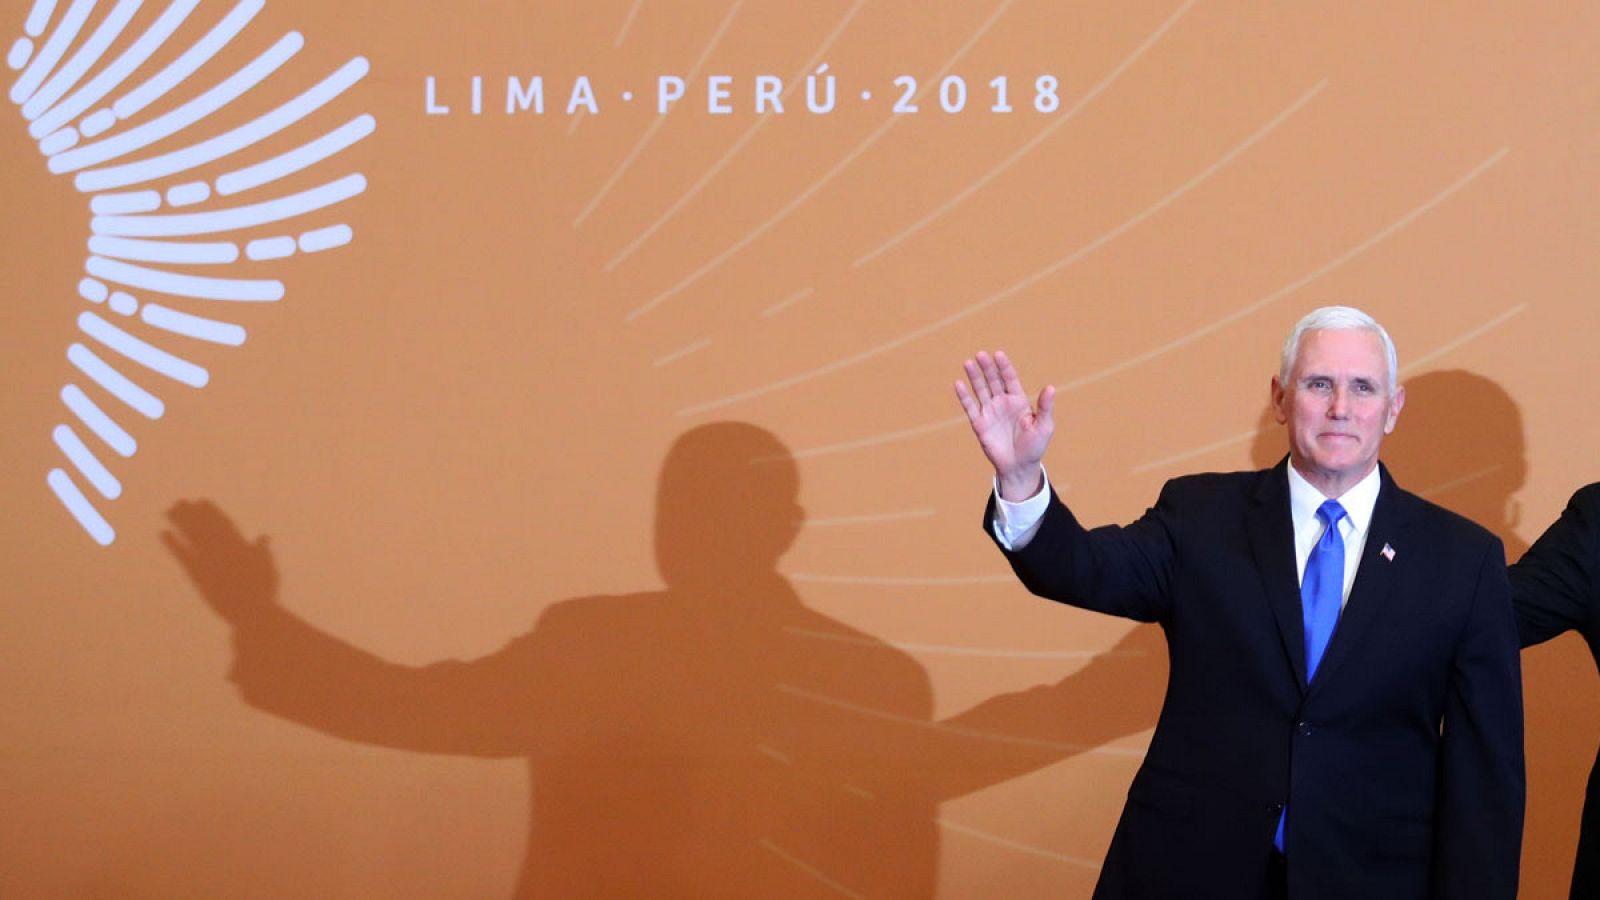 El vicepresidente de los Estados Unidos, Mike Pence, llegando para la foto oficial de la VIII Cumbre de las Américas el sábado 14 de abril de 2018 en el Centro de Convenciones de Lima (Perú).